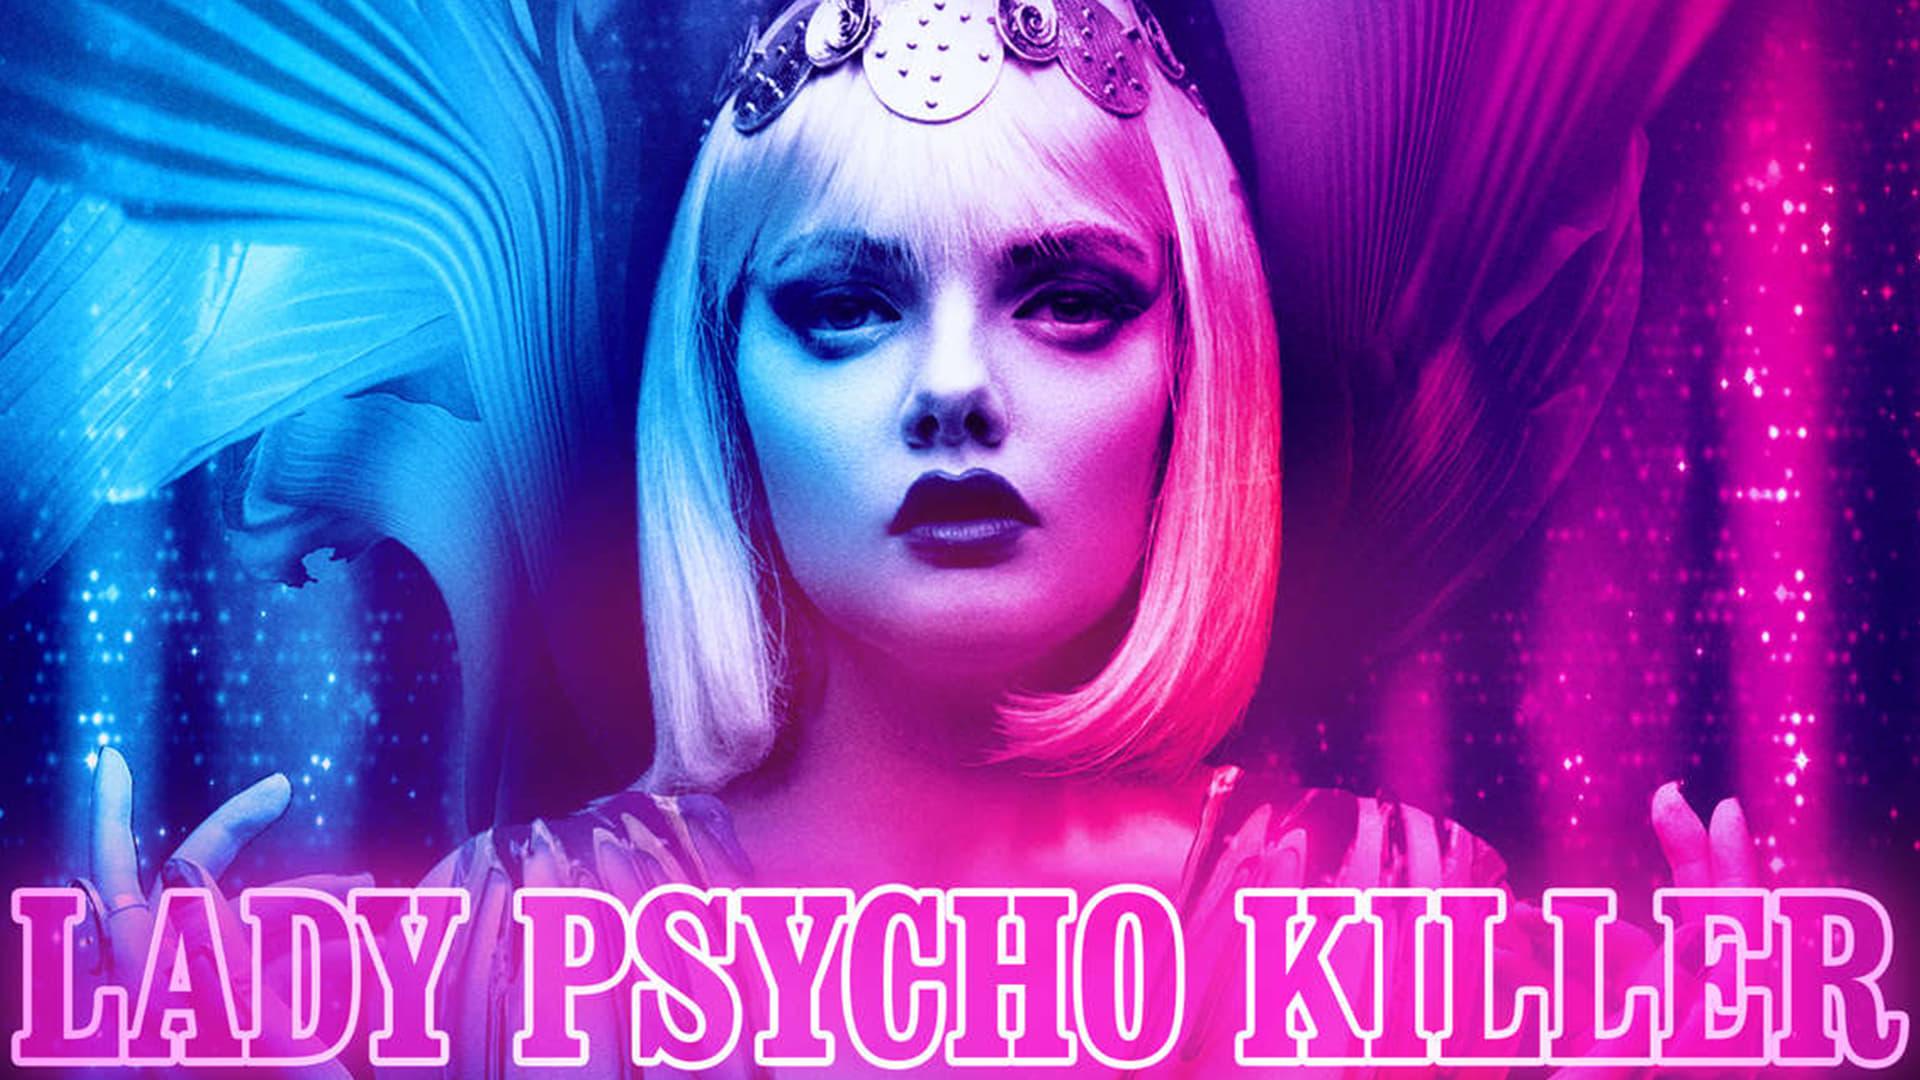 Lady Psycho Killer backdrop